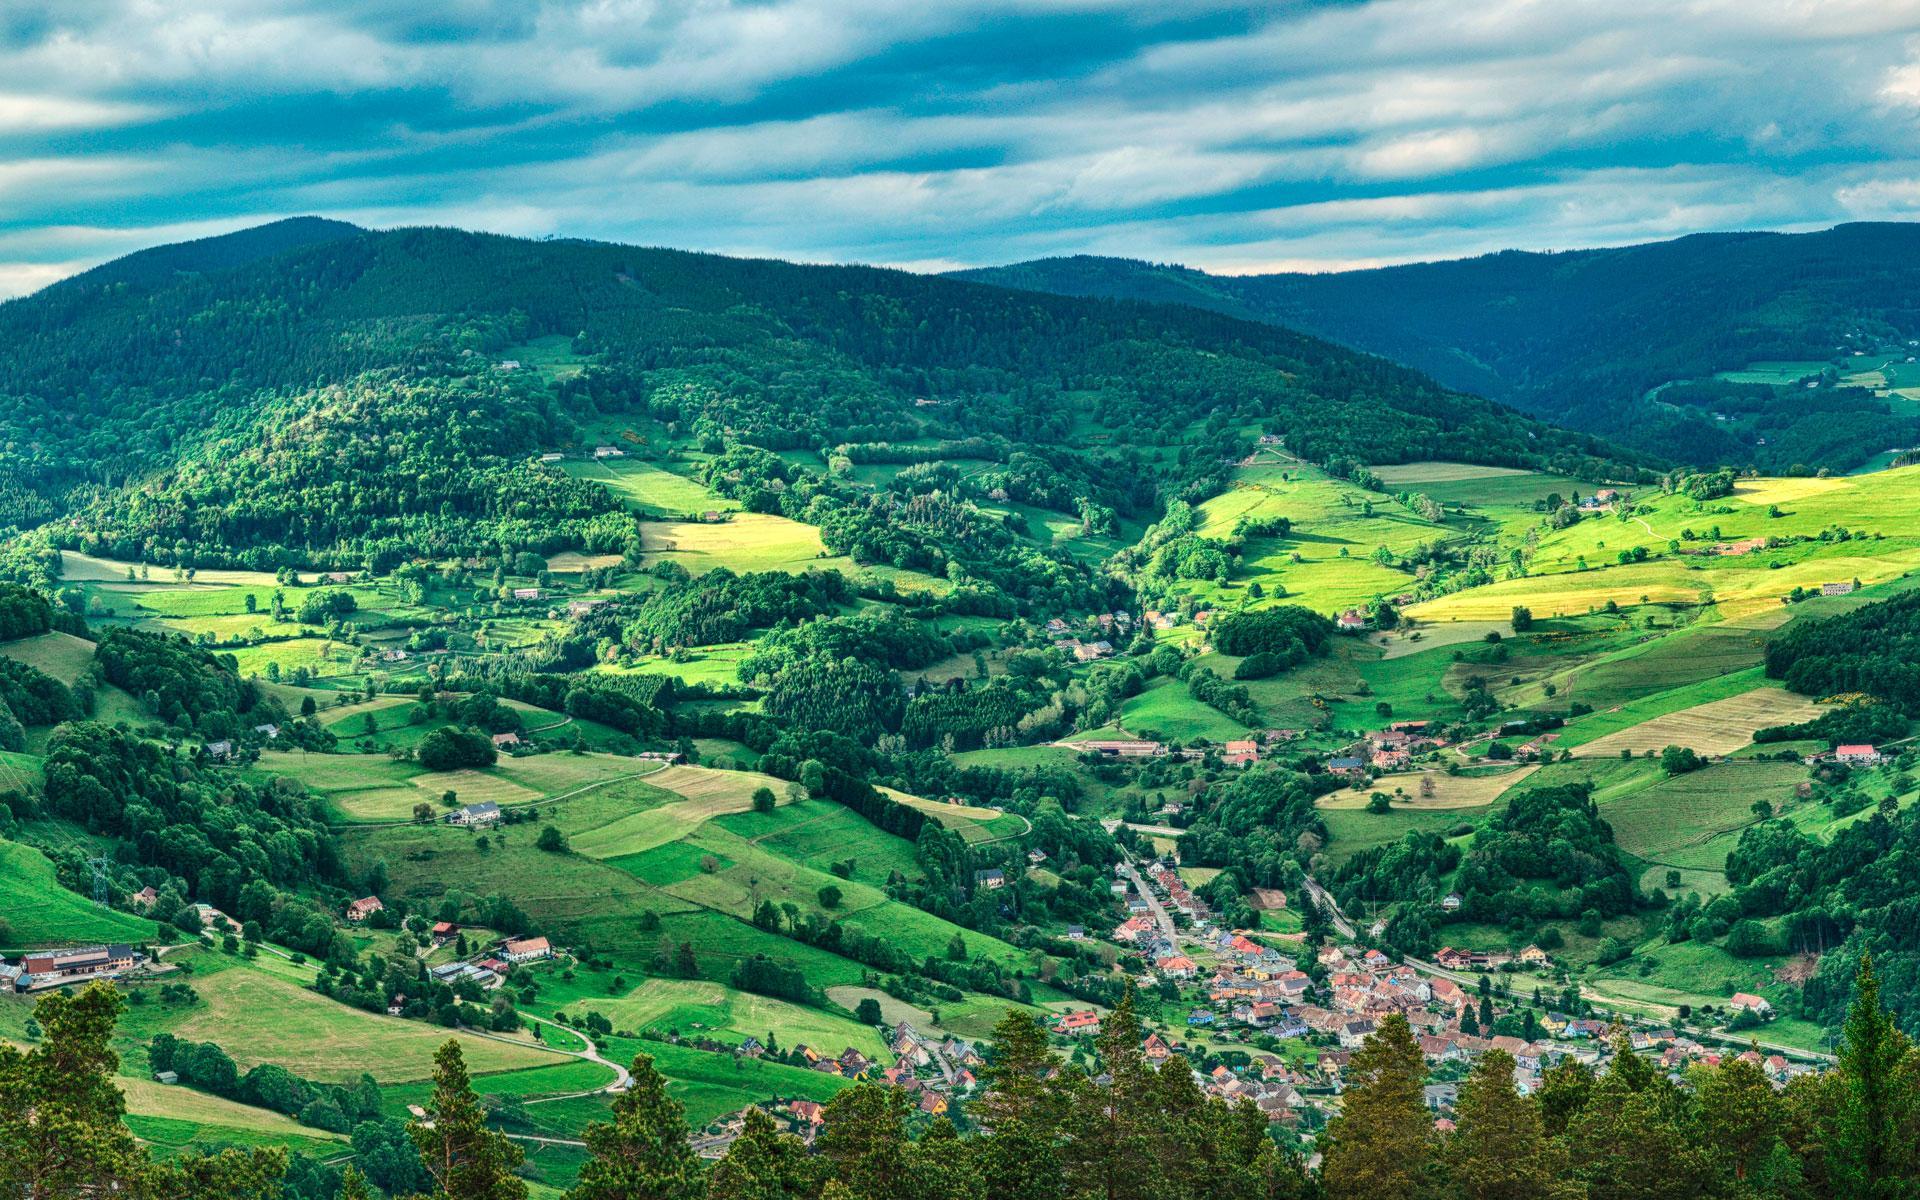 Photographie panoramique de la vallée verdoyante de Munster, au coeur des Vosges.